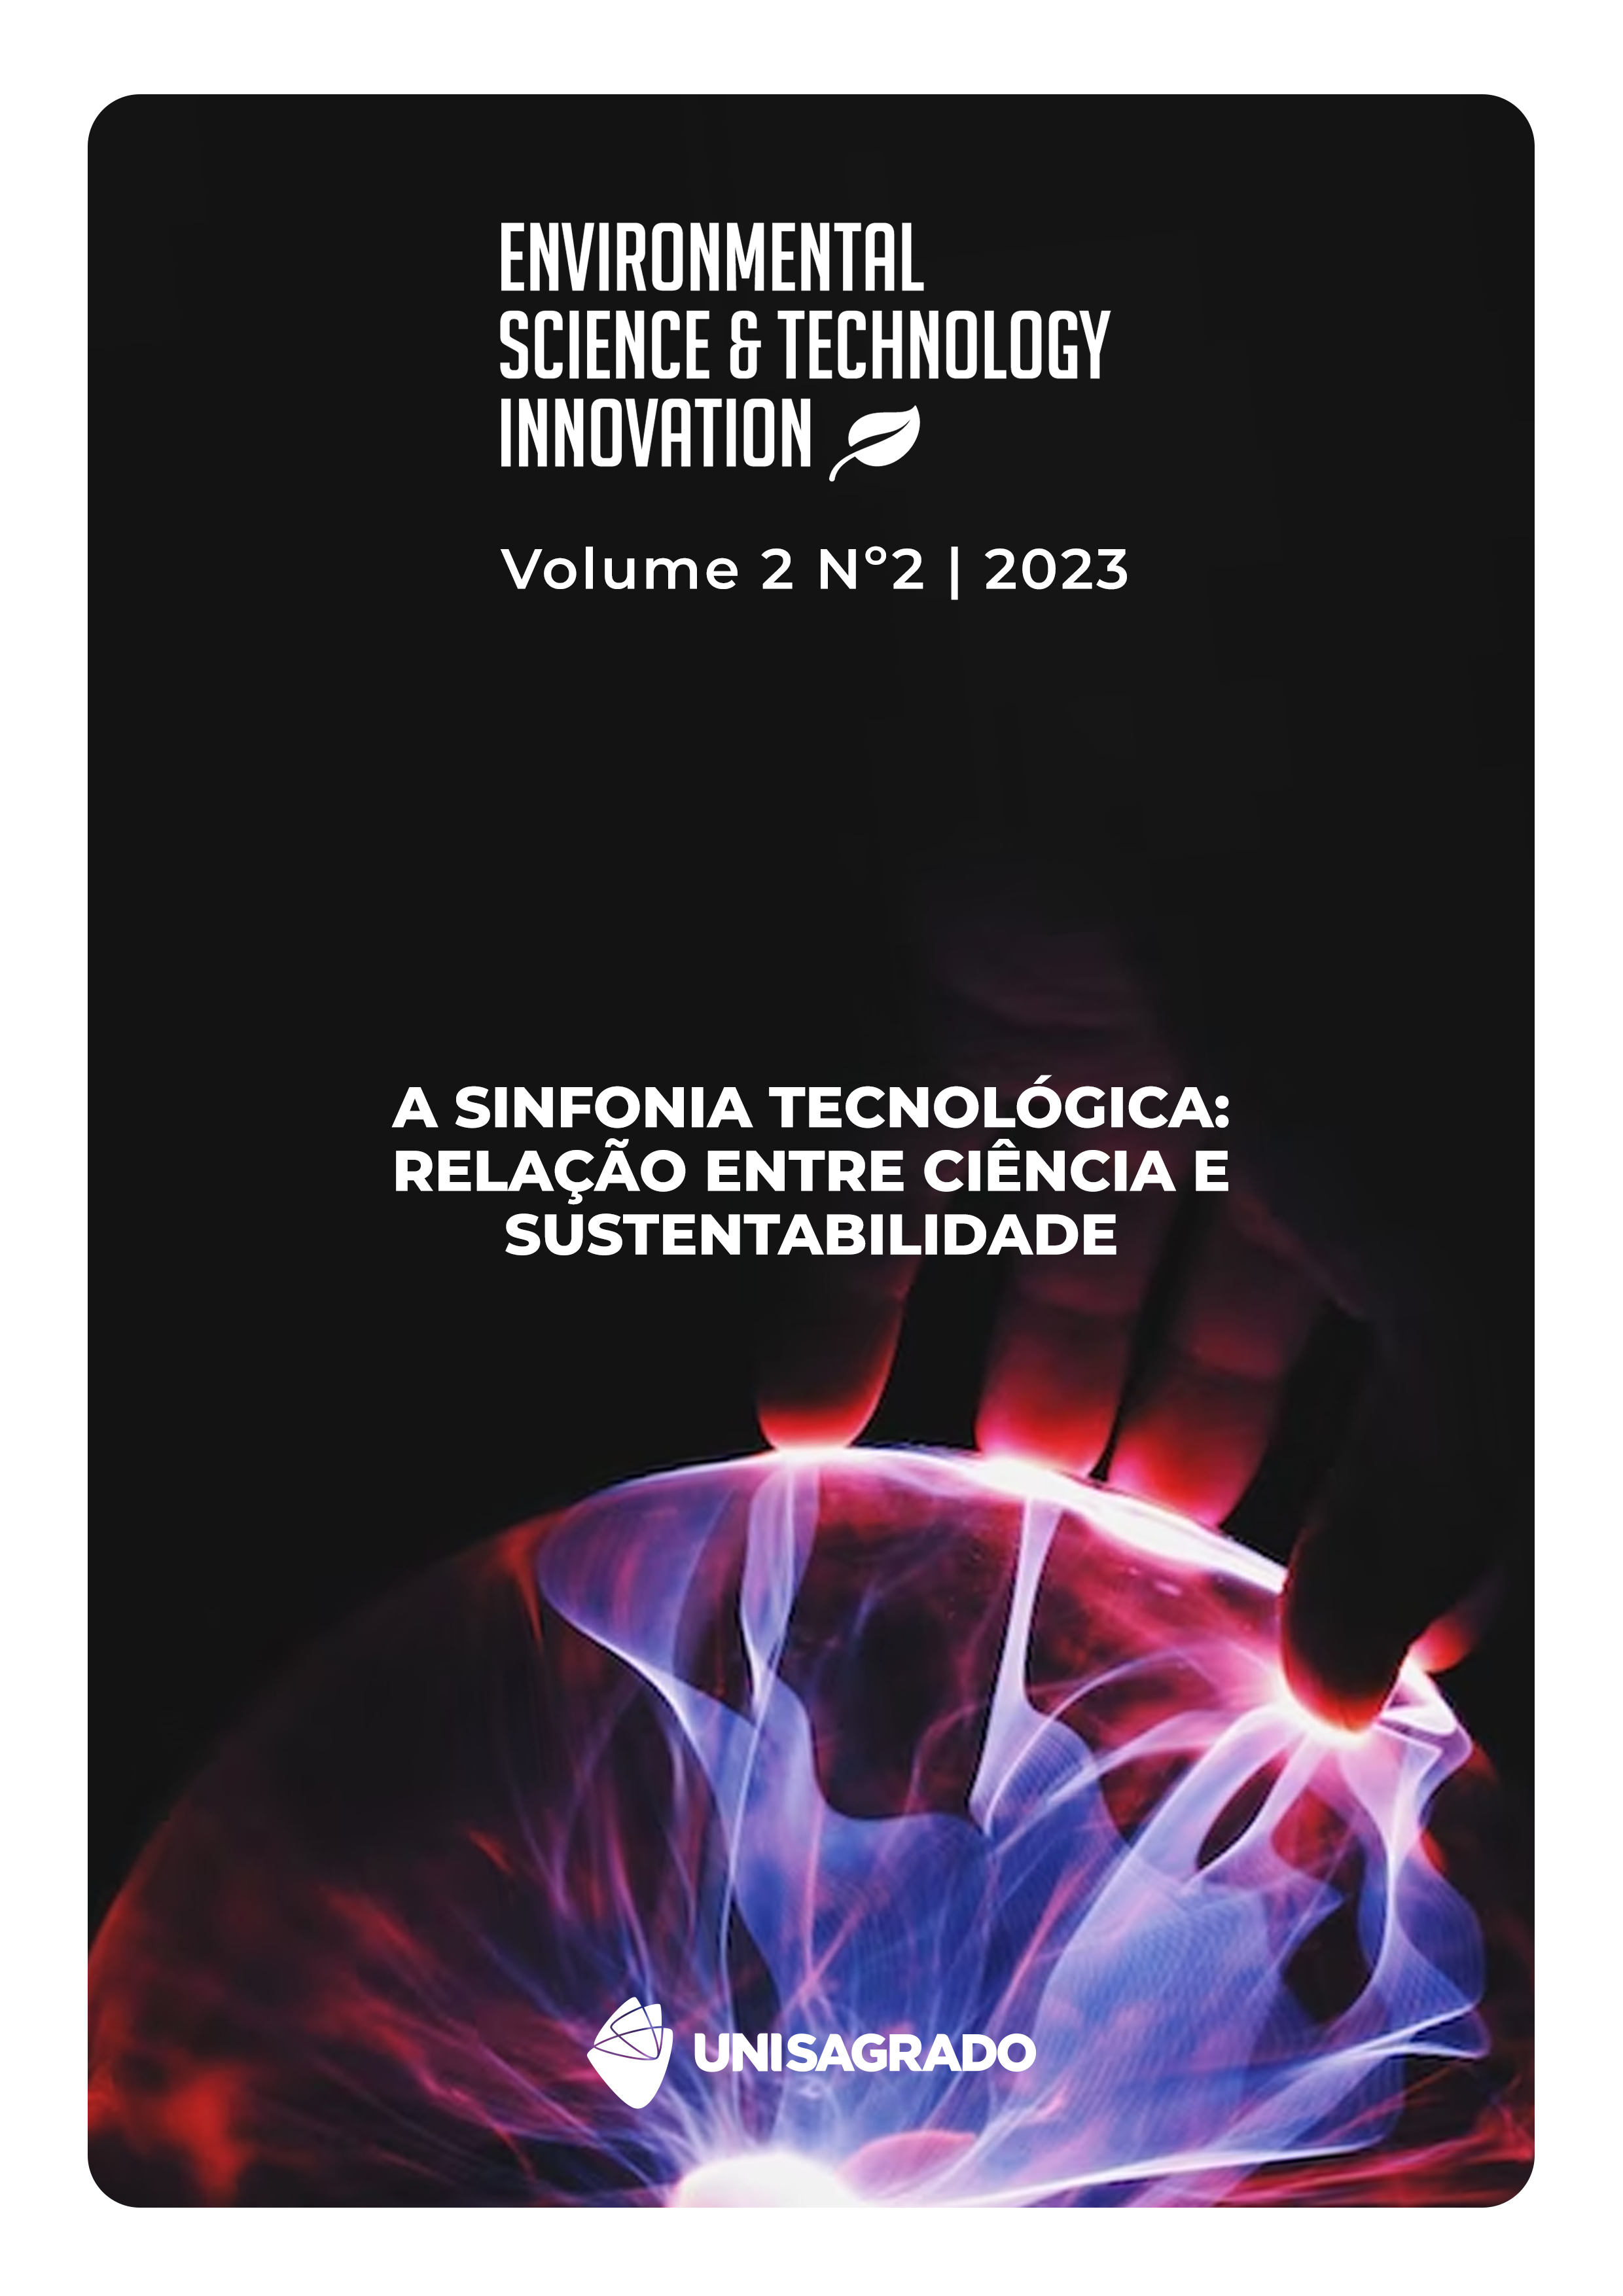 					Ver Vol. 2 Núm. 2 (2023): A sinfonia tecnológica: relação entre ciência e sustentabilidade
				